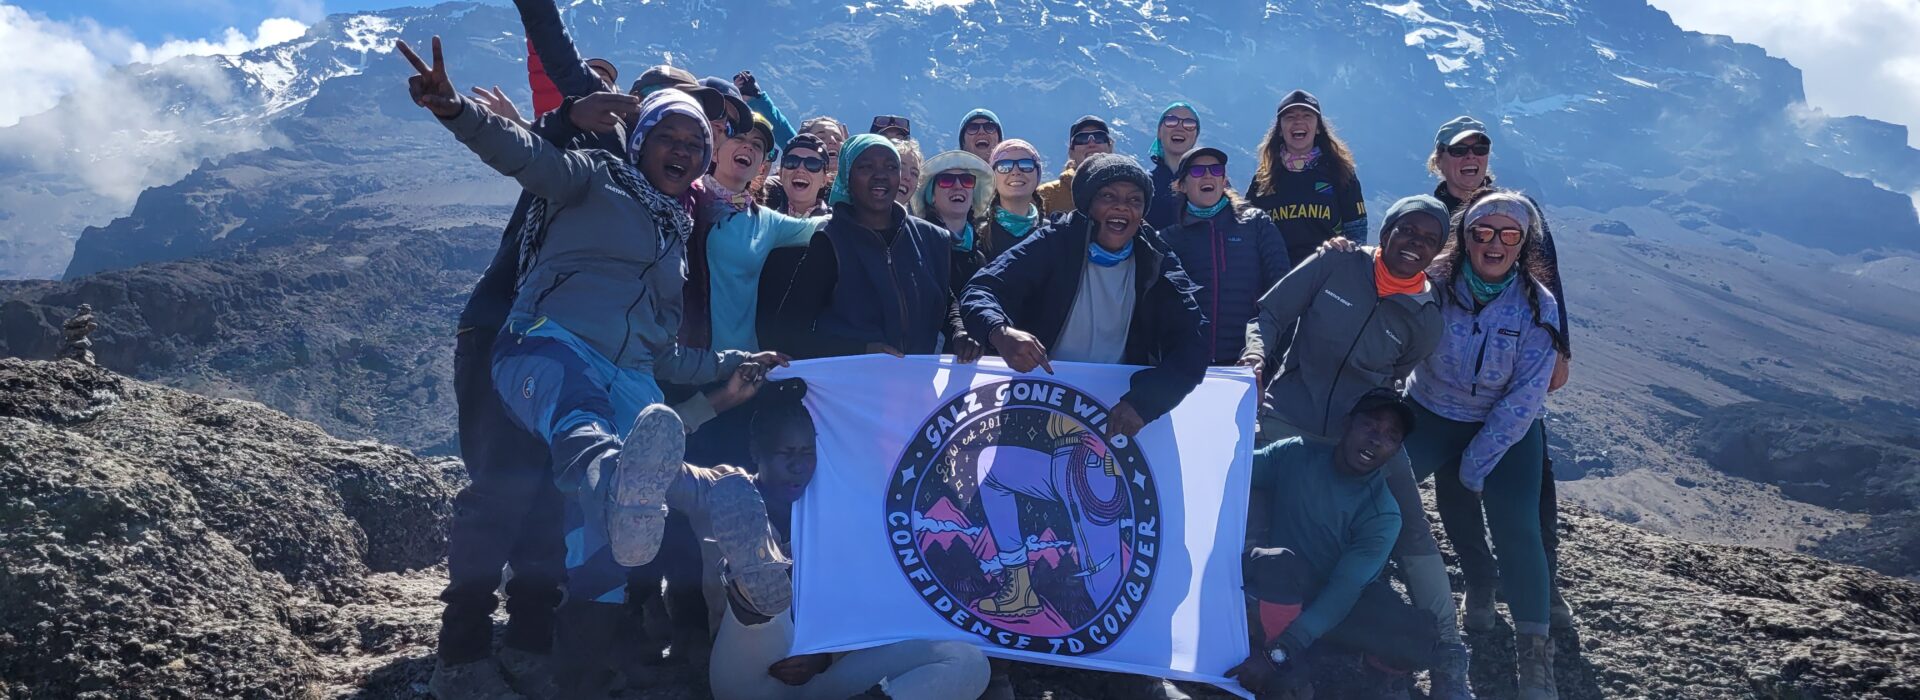 Galz Gone Wild on Kilimanjaro with local Tanzanian Female Porter Staff